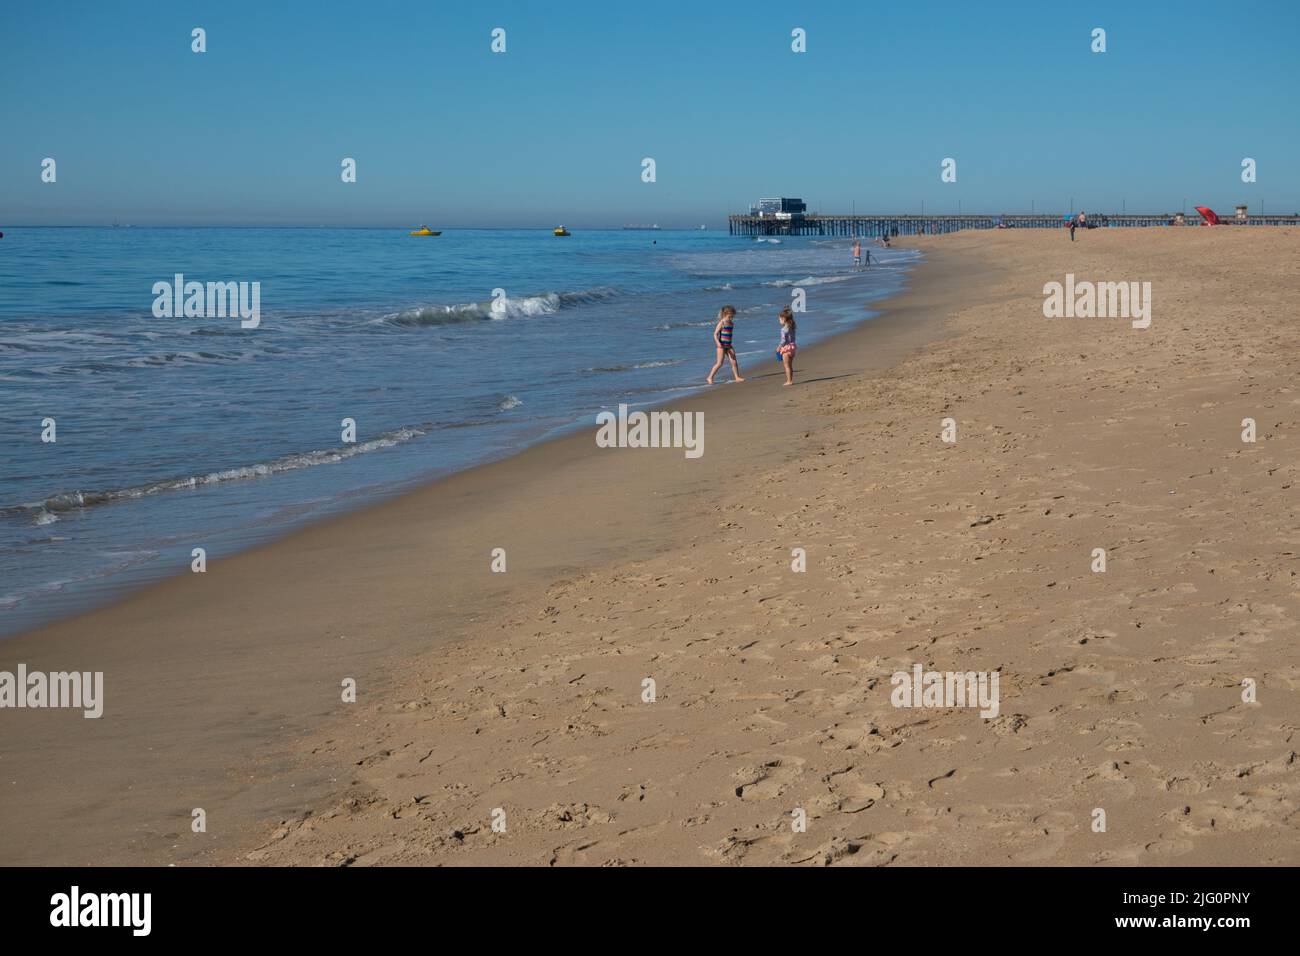 Los niños y el muelle y un largo tramo de playa de arena en Balboa Peninsula Beach Newport Beach, California, Estados Unidos Foto de stock